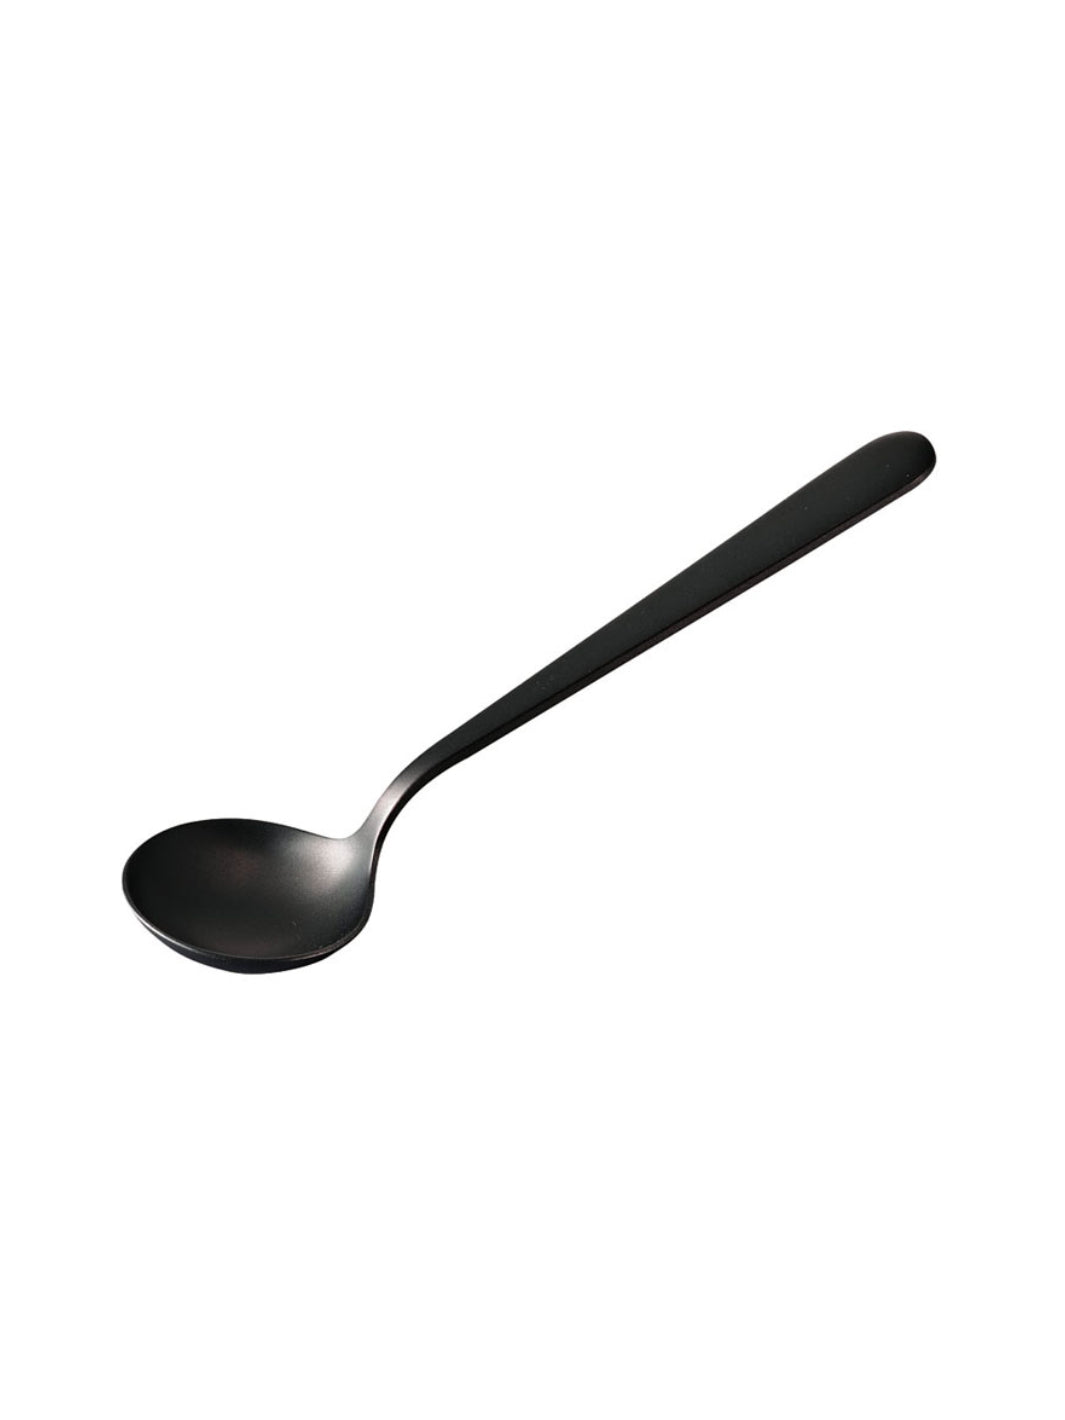 HARIO Kasuya Cupping Spoon